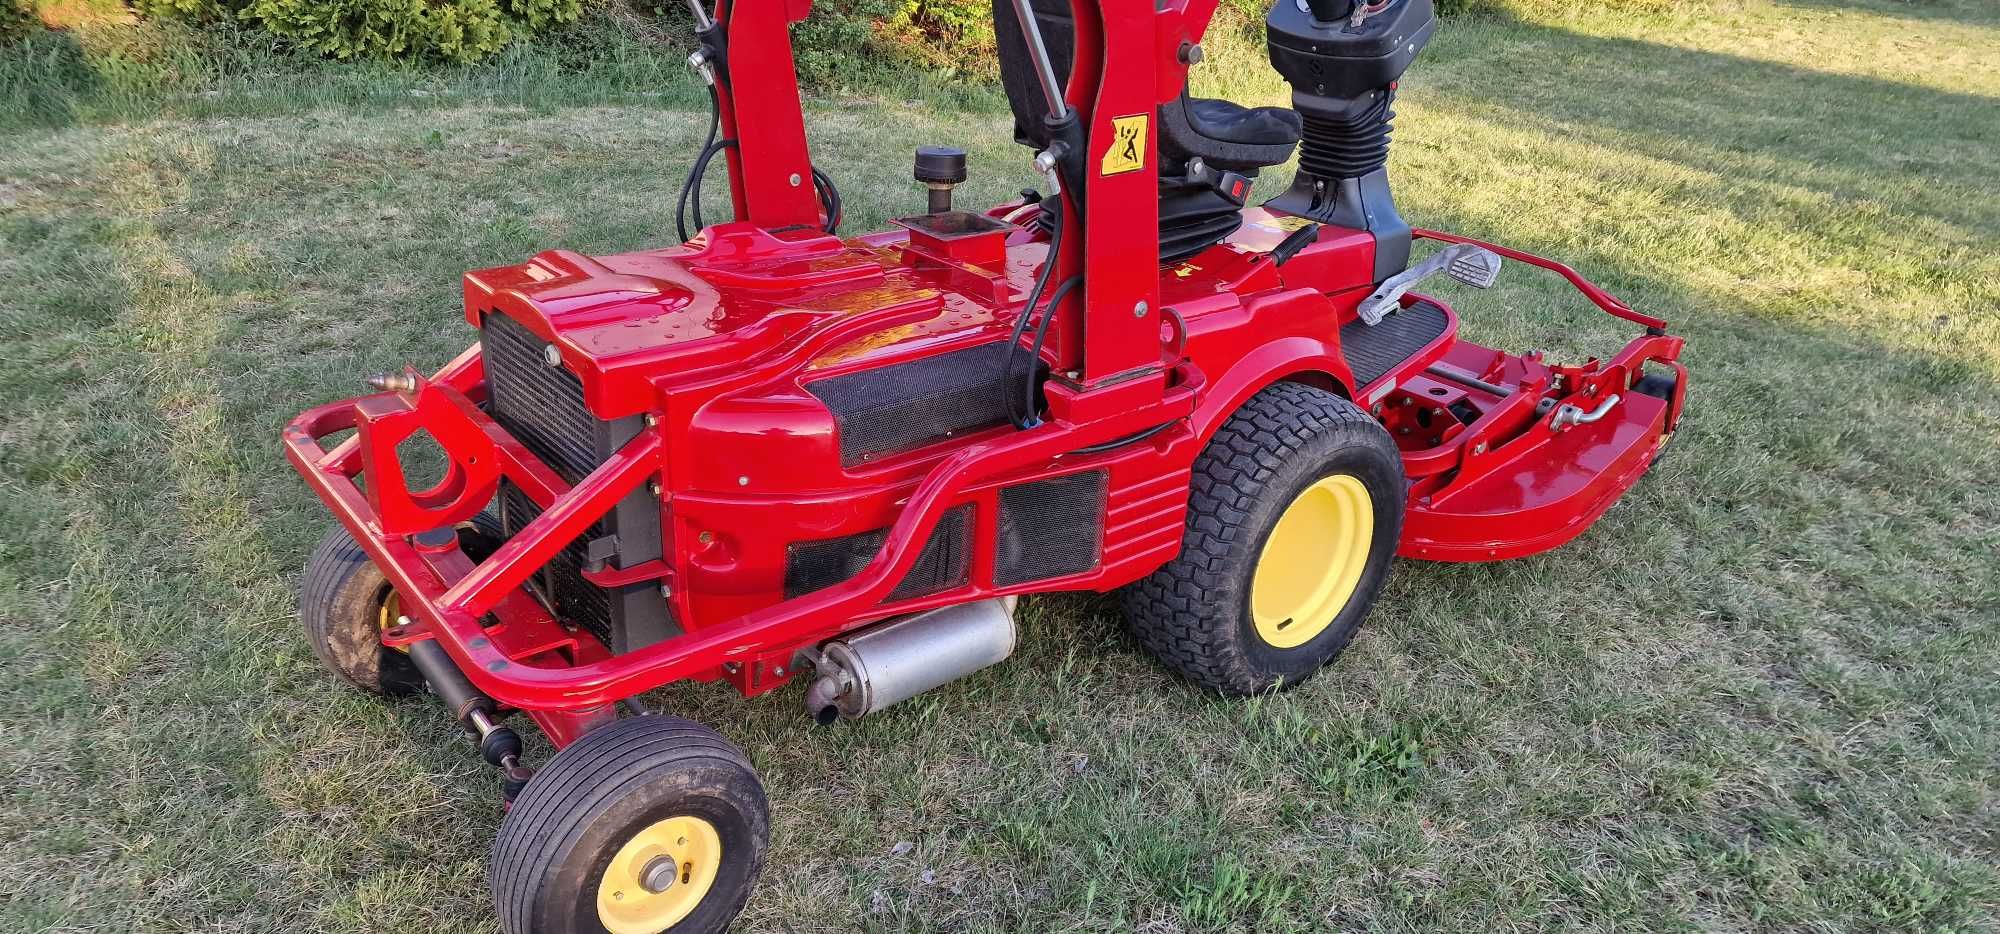 Traktorek kosiarka Gianni Ferrari PG280 Kubota ( iseki john deere)